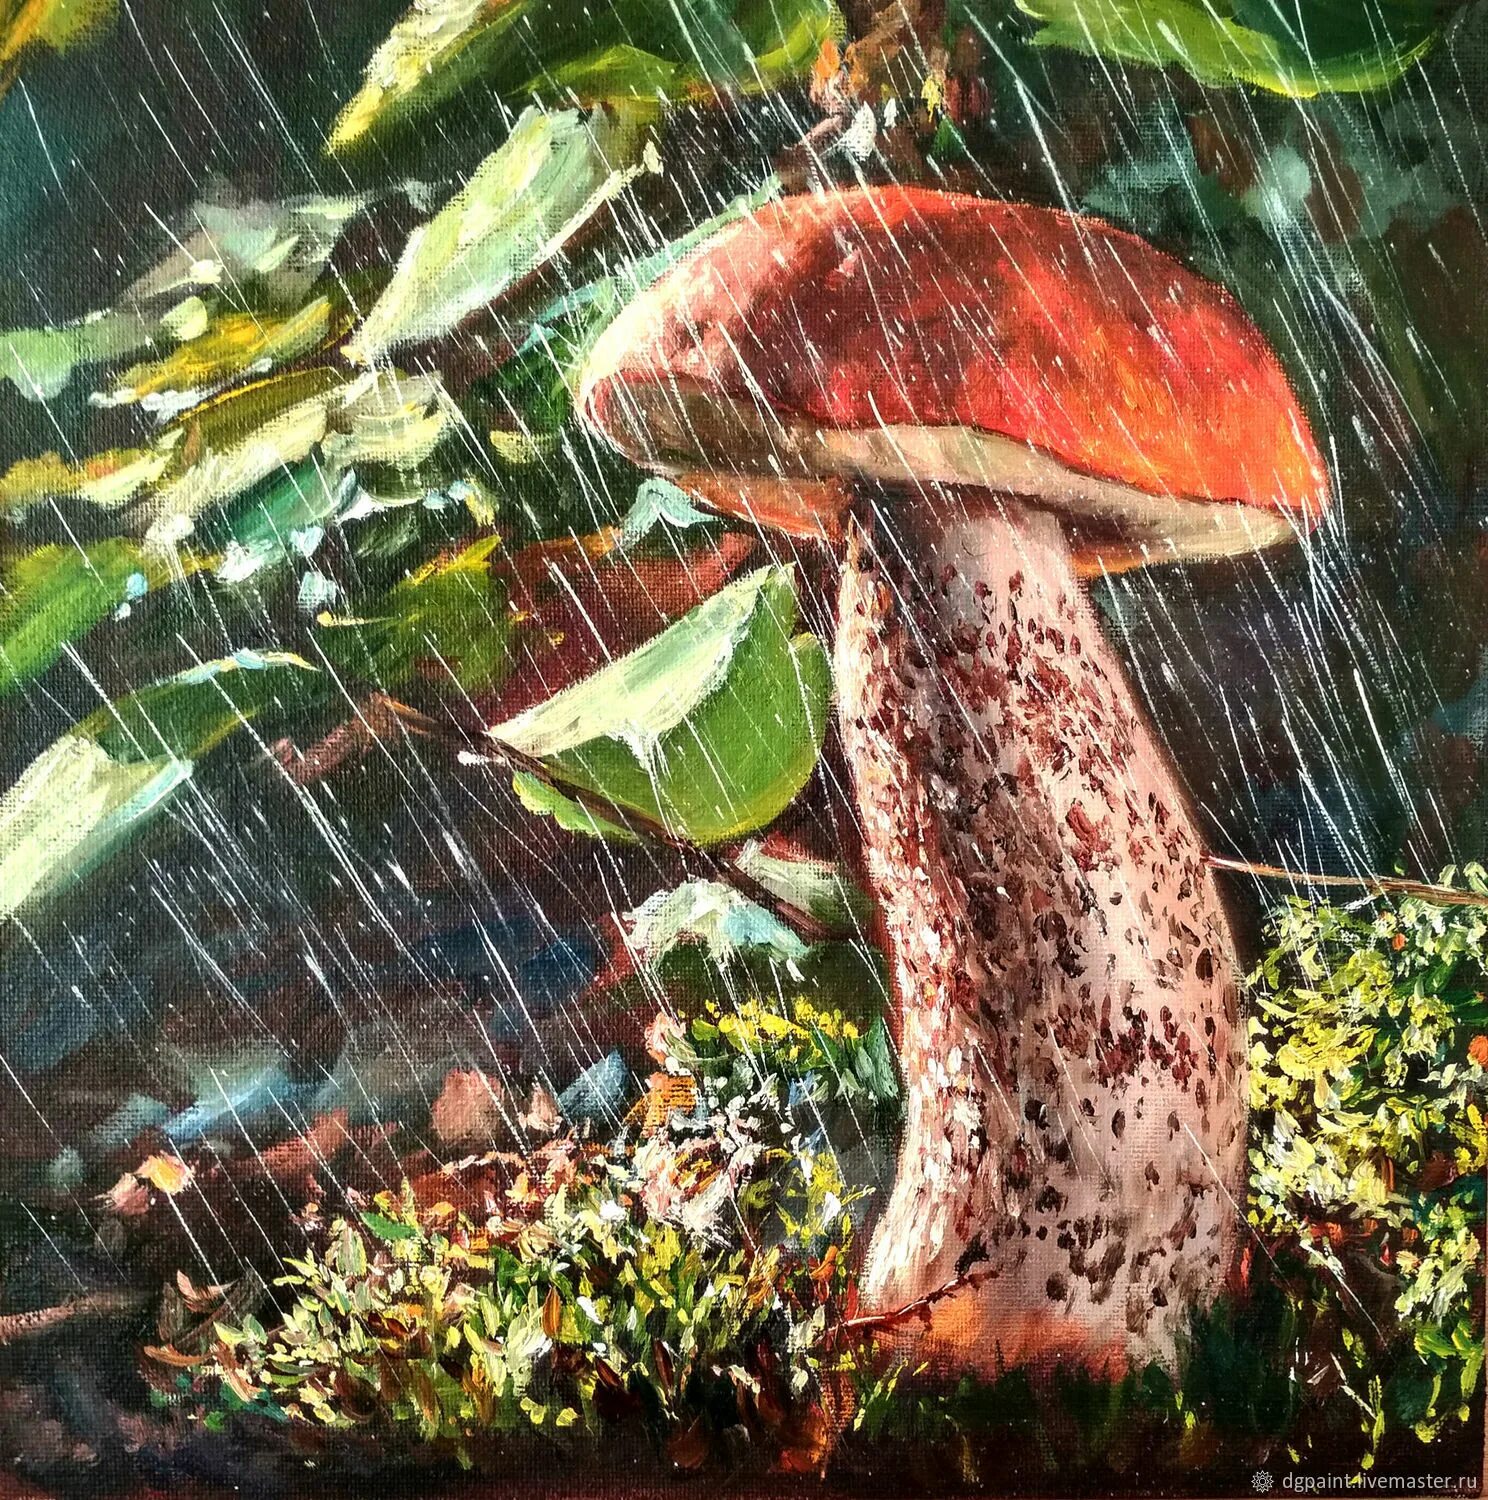 Дождя больше грибов. Грибы в живописи. Грибной дождь. Живопись Лесные грибы. Грибы в живописи маслом.